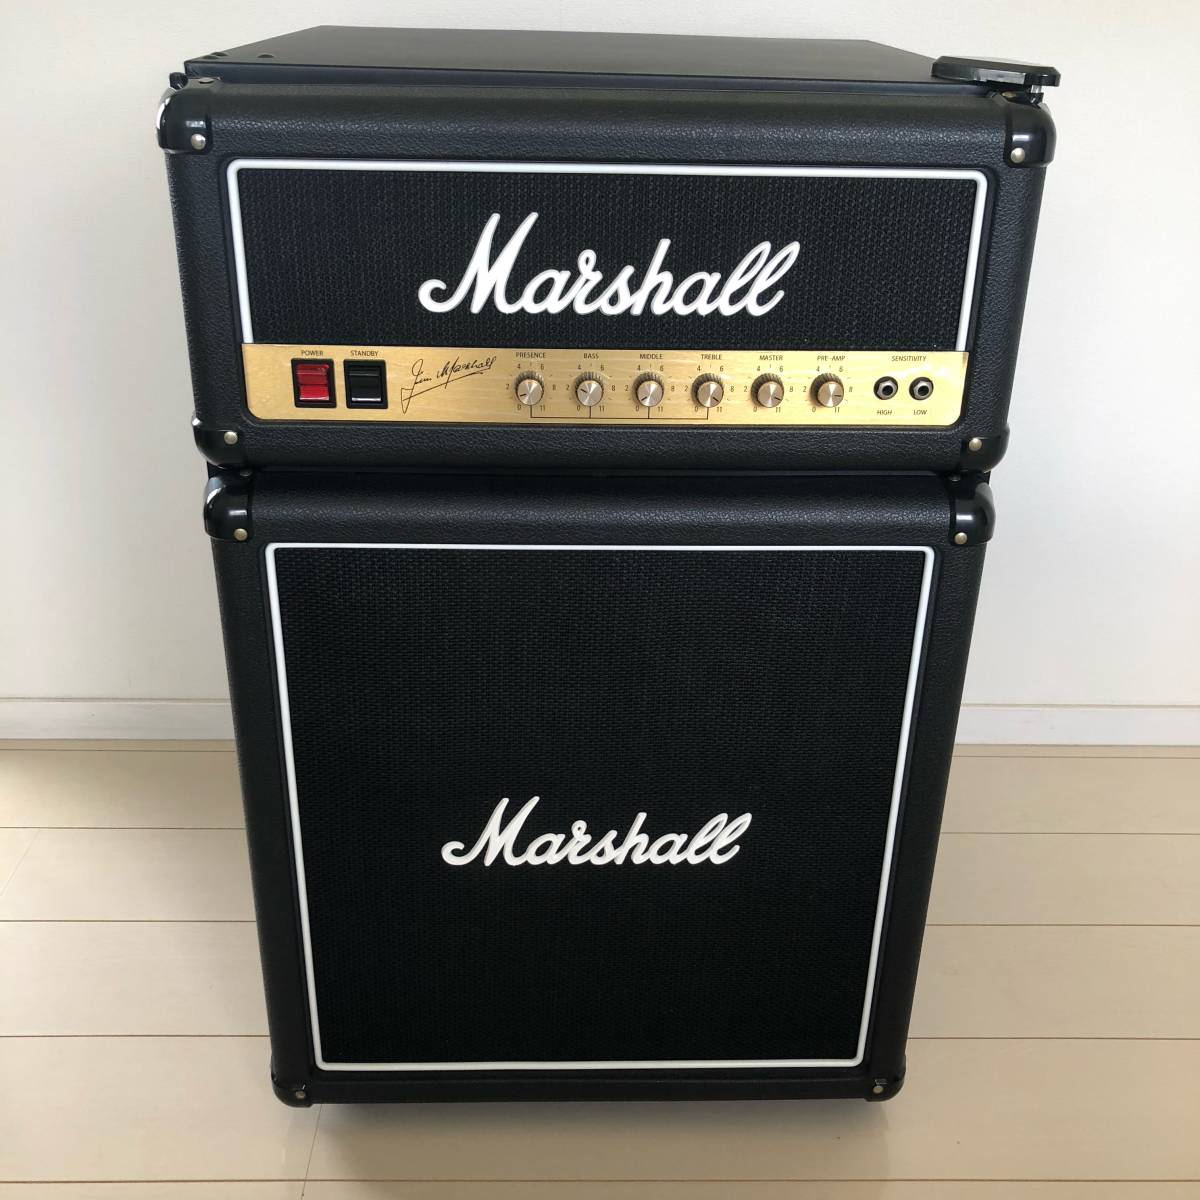 Marshall マーシャル 126L ギターアンプ型 冷蔵庫 海外モデル 良品 高品質 冷蔵庫